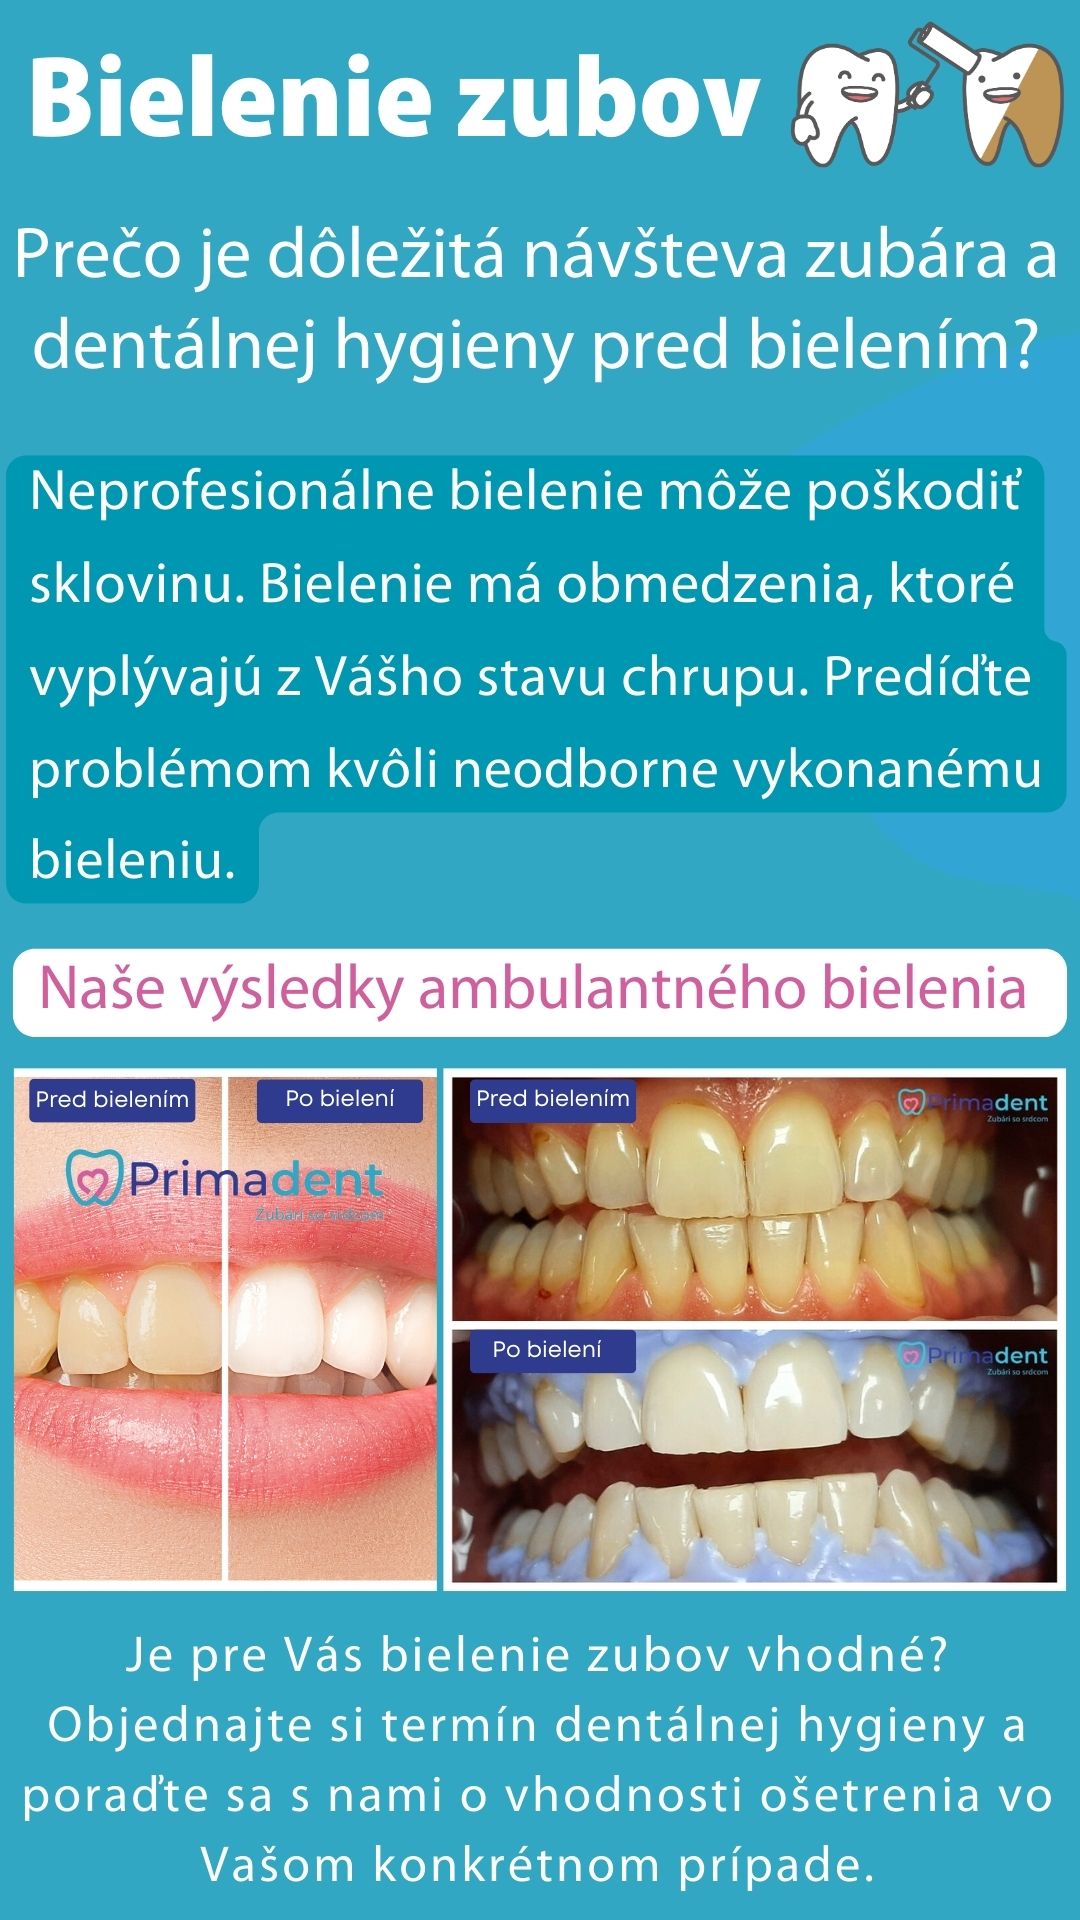 Bielenie zubov - Prečo absolvovať predtým dentálnu hygienu?